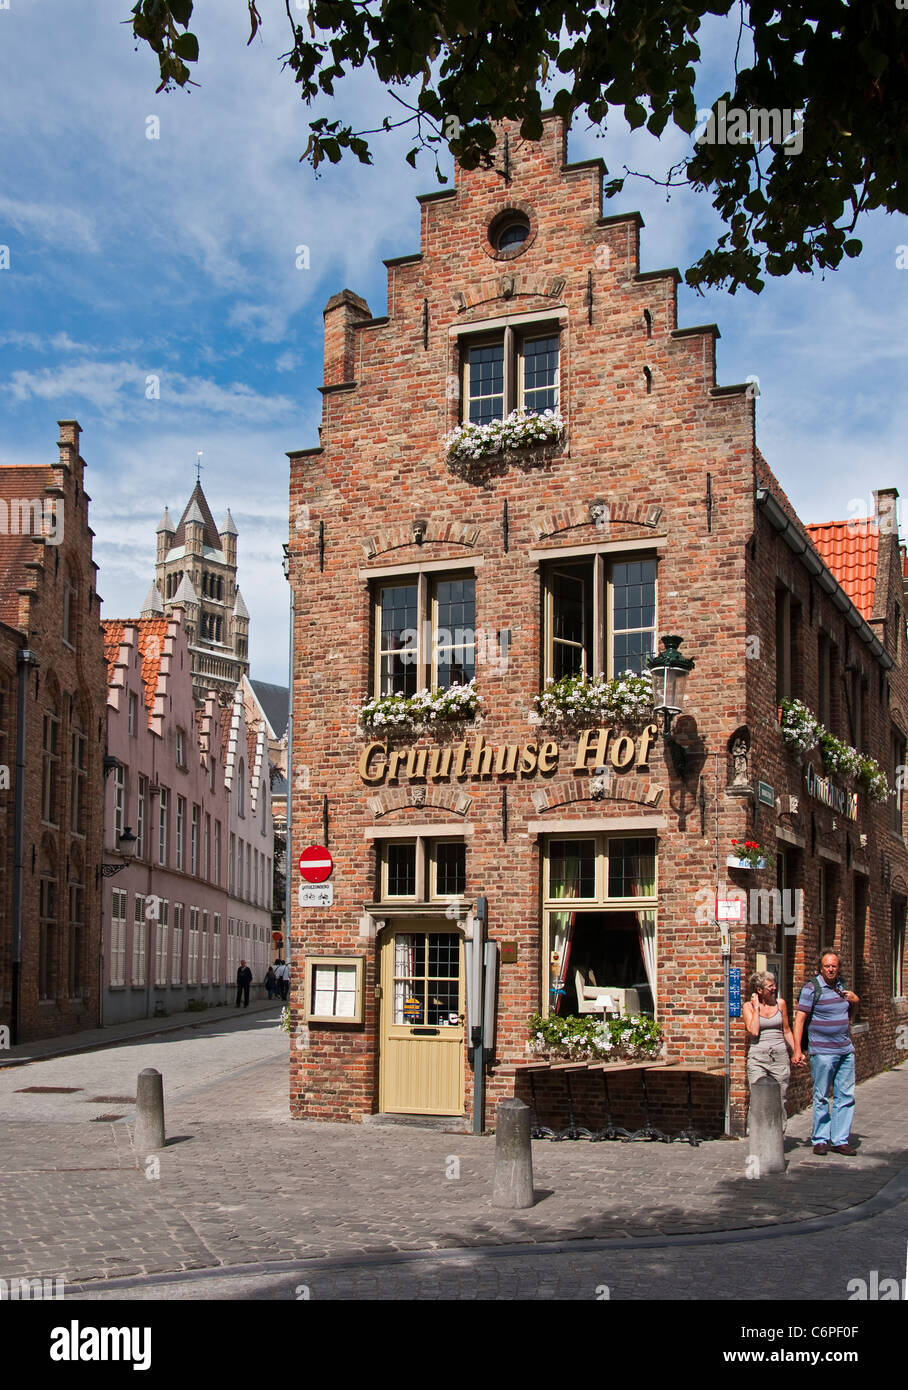 Brügge (Brugge) Wahrzeichen mit Stepgable Fassade wohnen renommierten Gruuthuse Hof Restaurant und Tee Zimmer Stockfoto